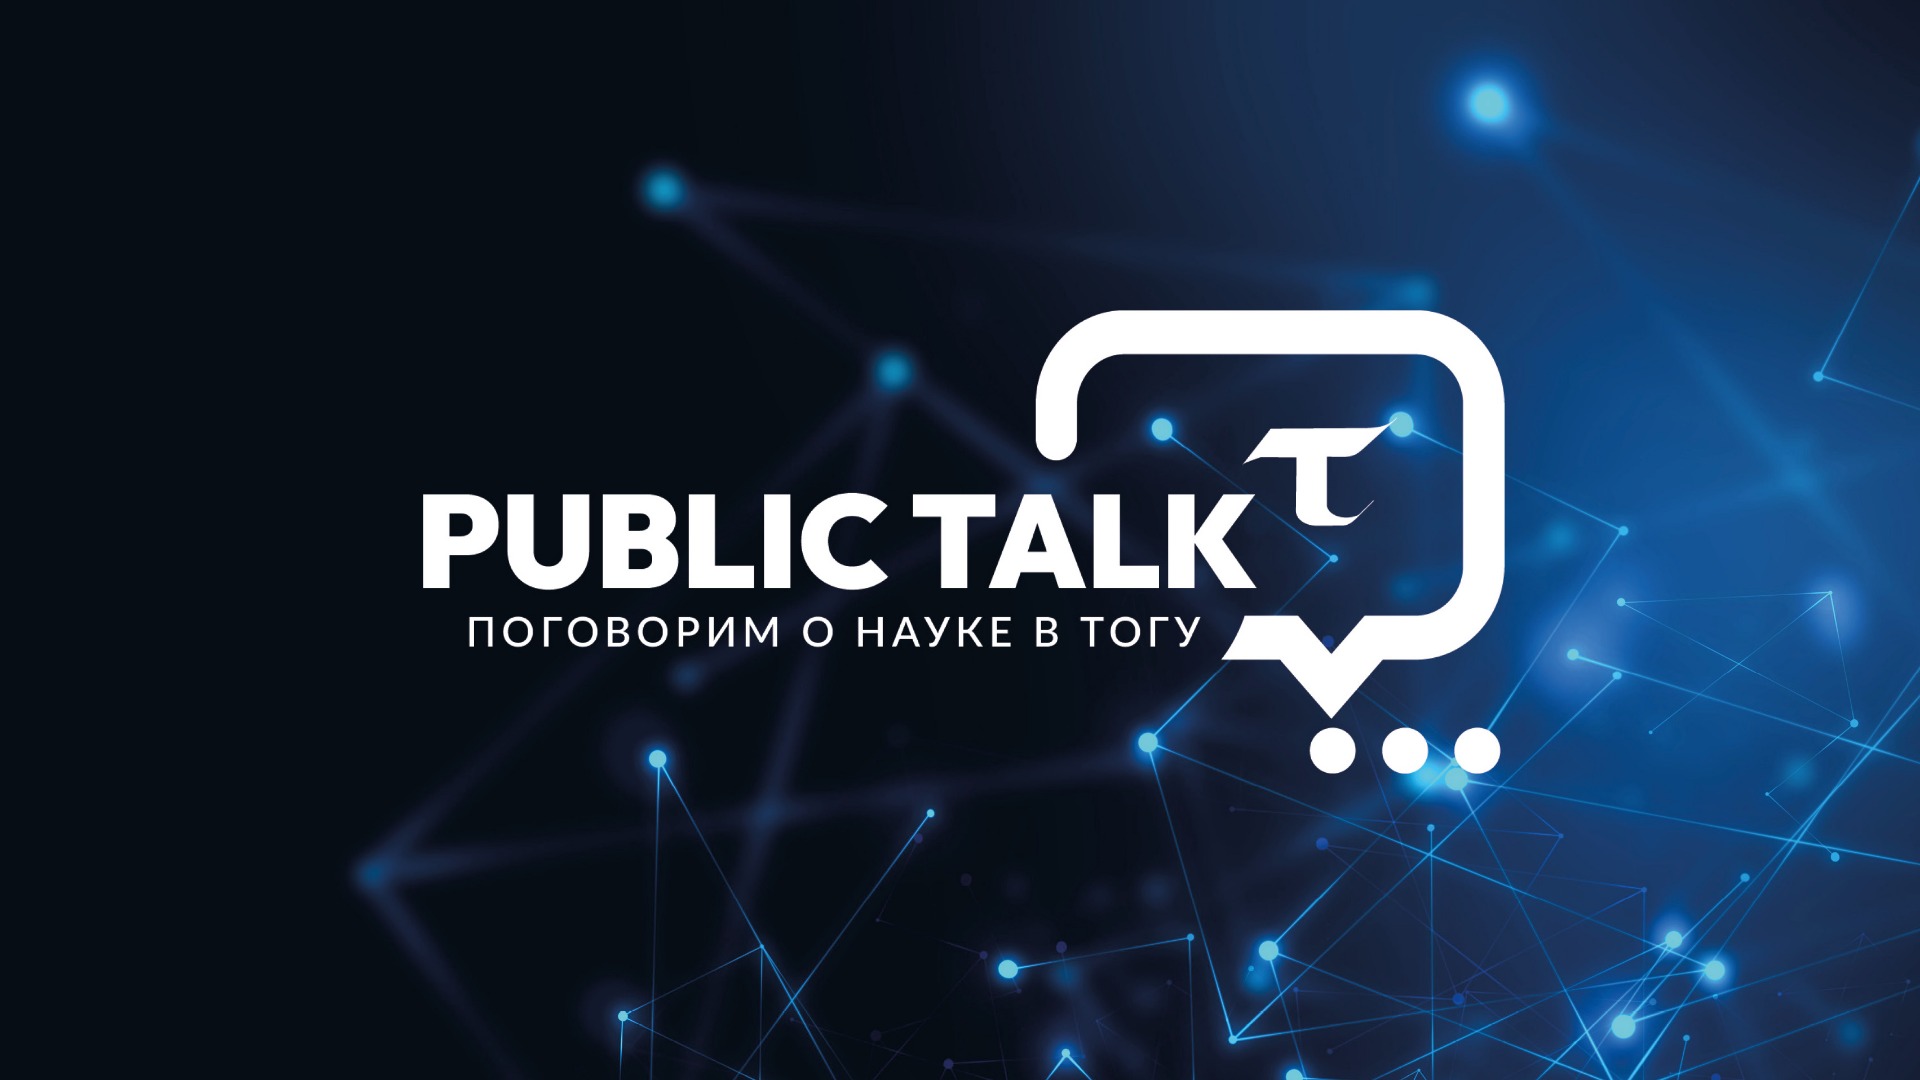 "Public talk онлайн" Вопросы в прямом эфире